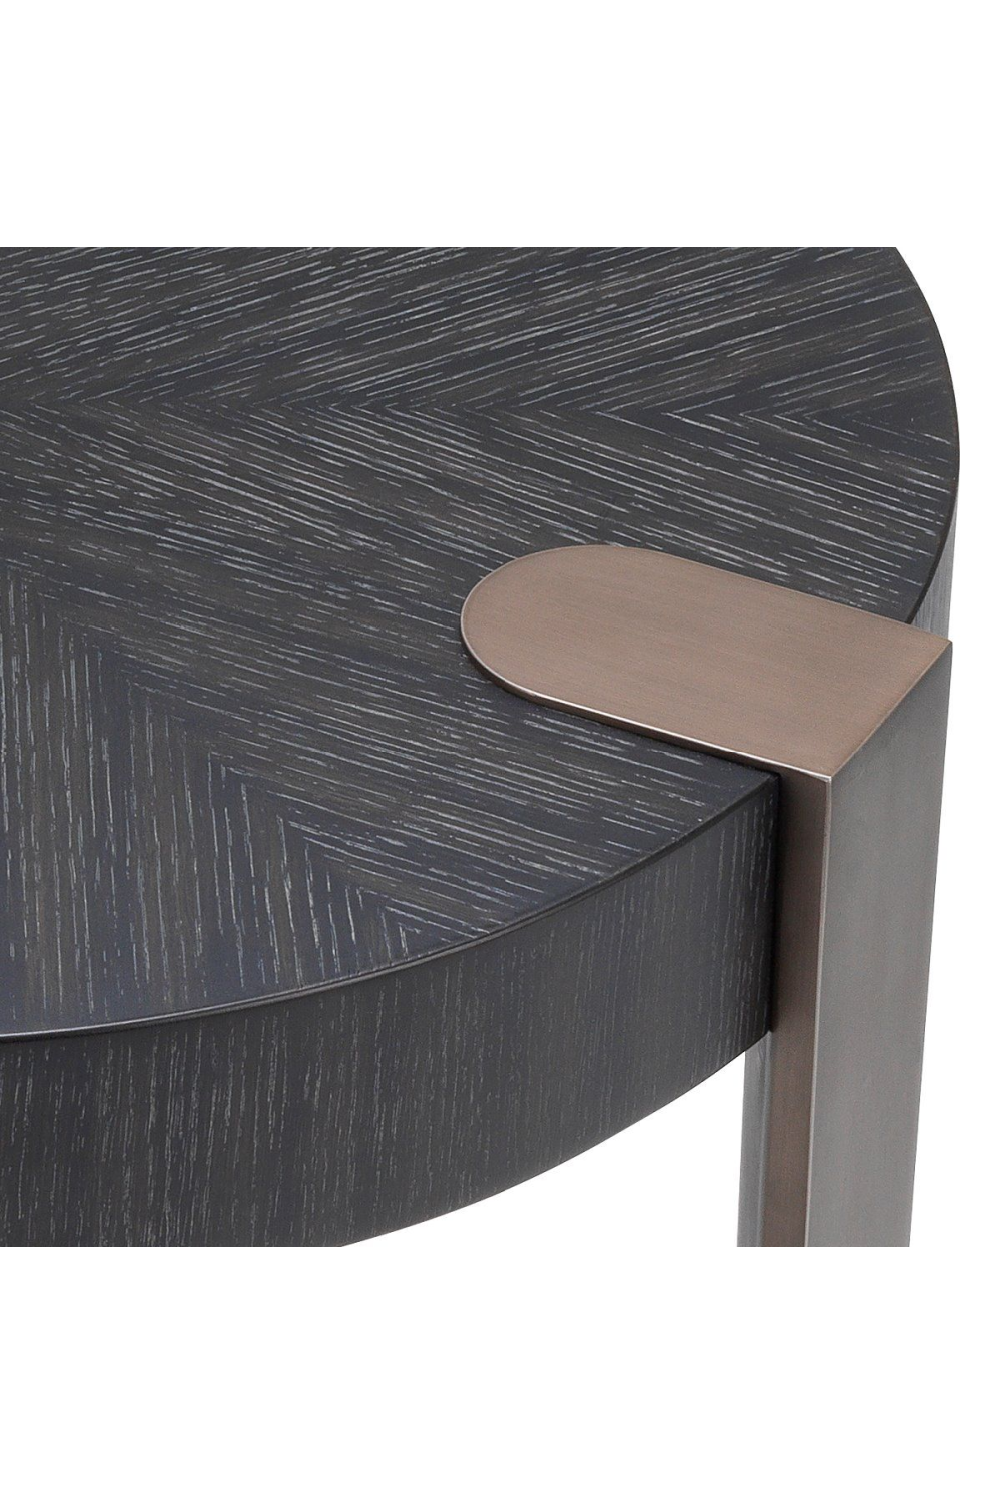 Charcoal Gray Oak Veneer Side Table | Eichholtz Oxnard | OROA